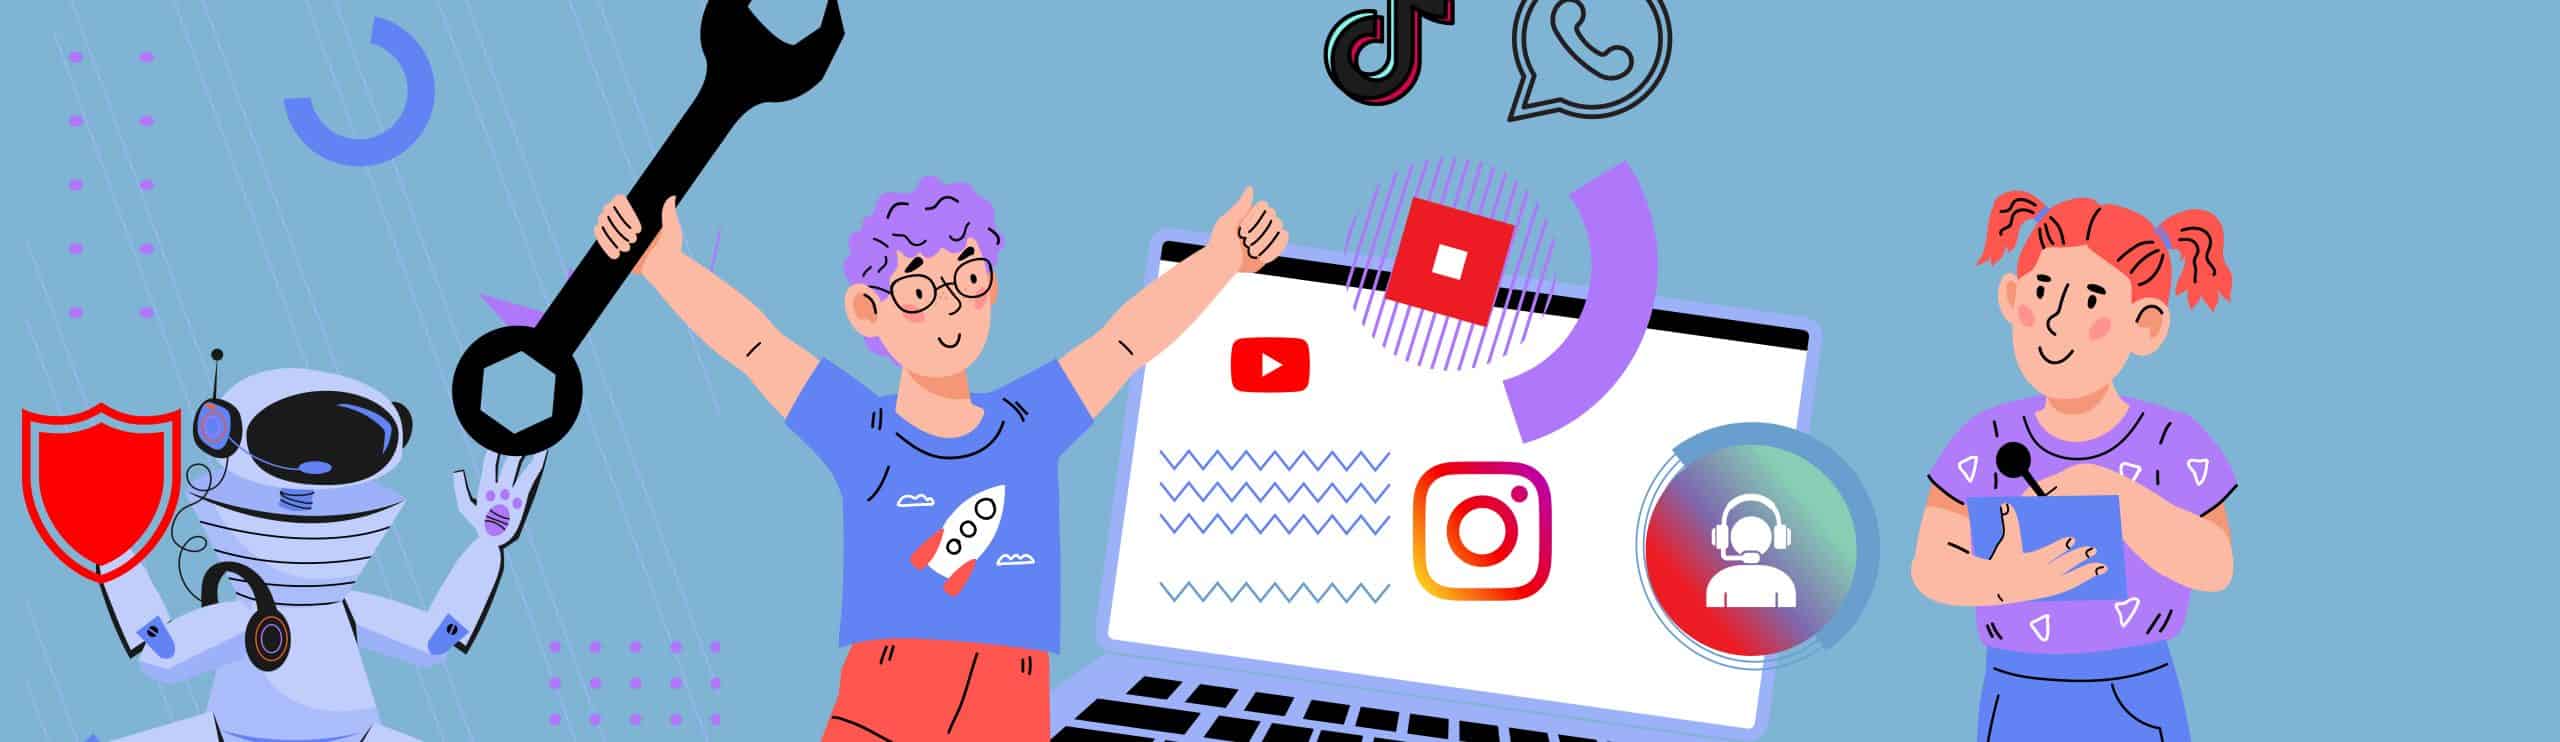 Illustration: Zwei Jugendliche vor überdimensionalem Laptop, über dem Logos diverser sozialer Netzwerke schweben. Ein Jugendlicher hält einen Schraubenschlüssel.